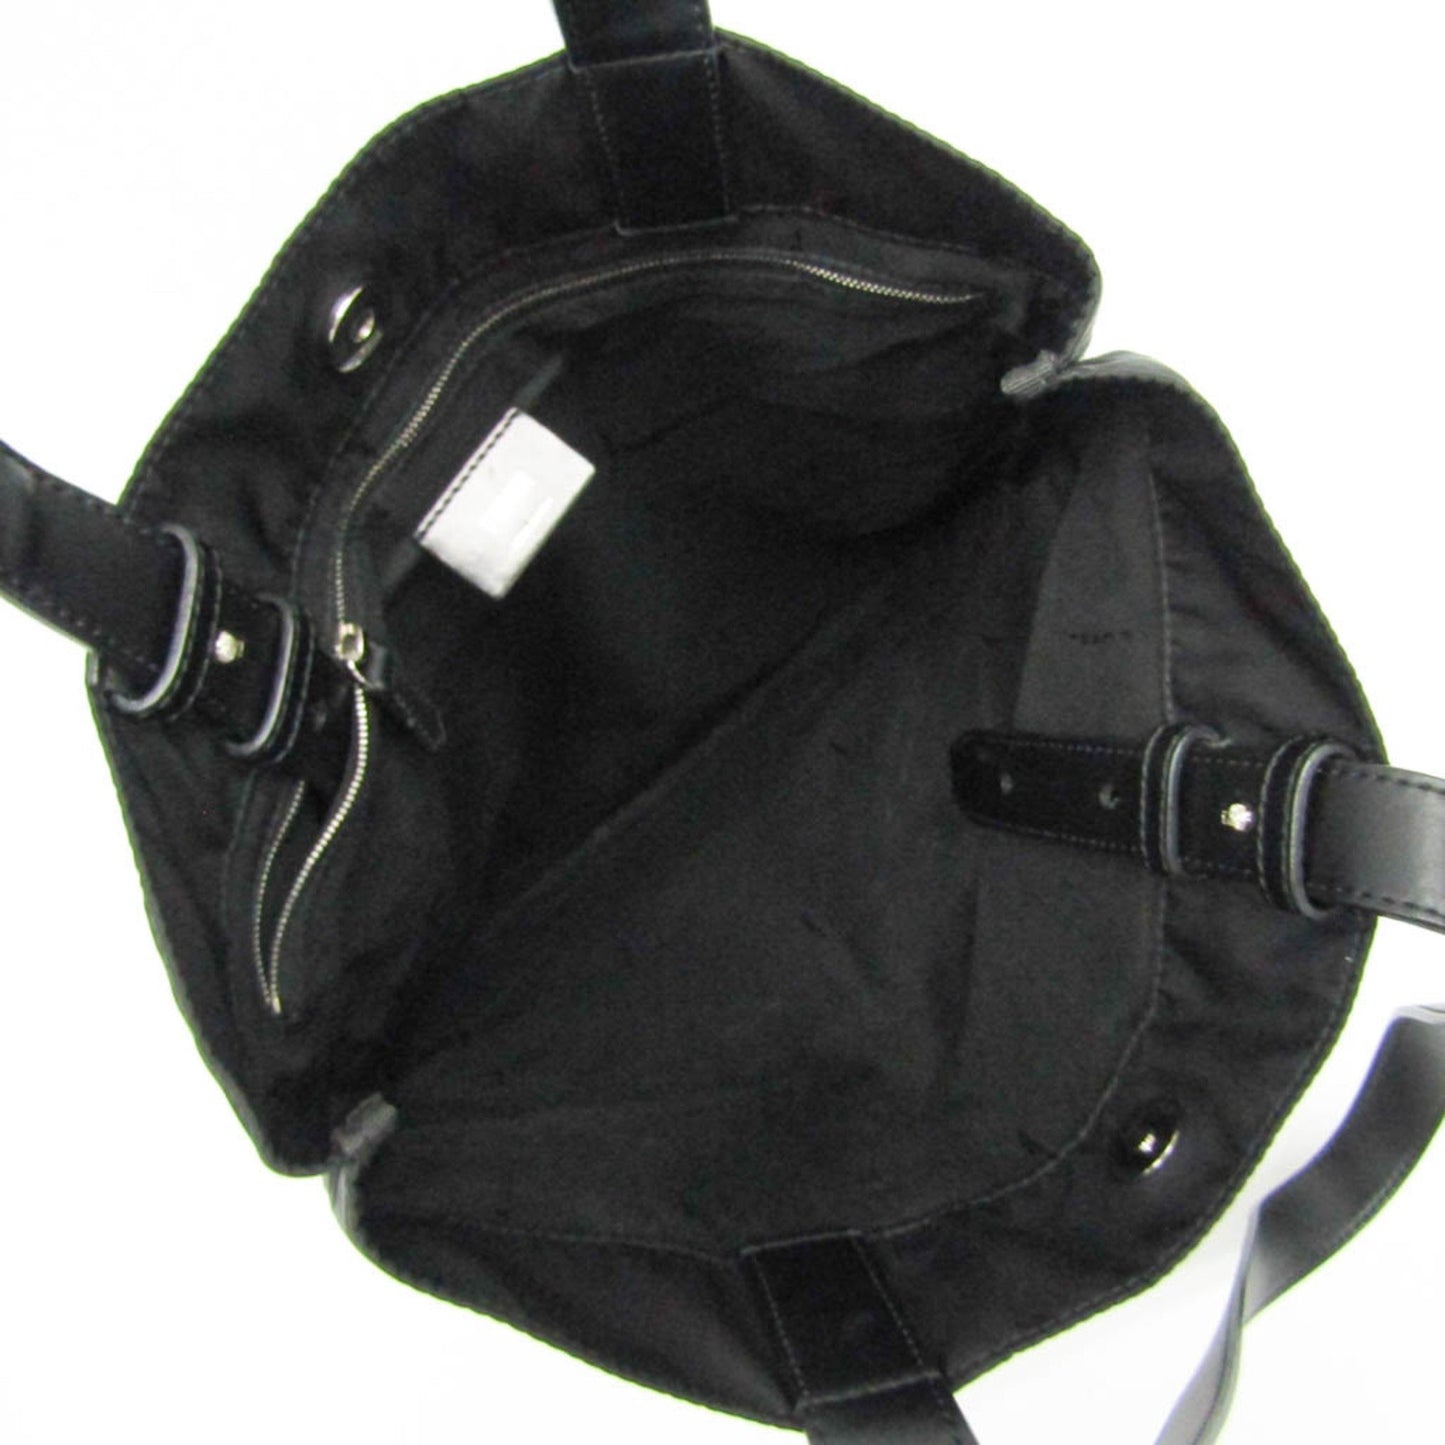 FENDI Women's Black Nylon Tote Bag in Black